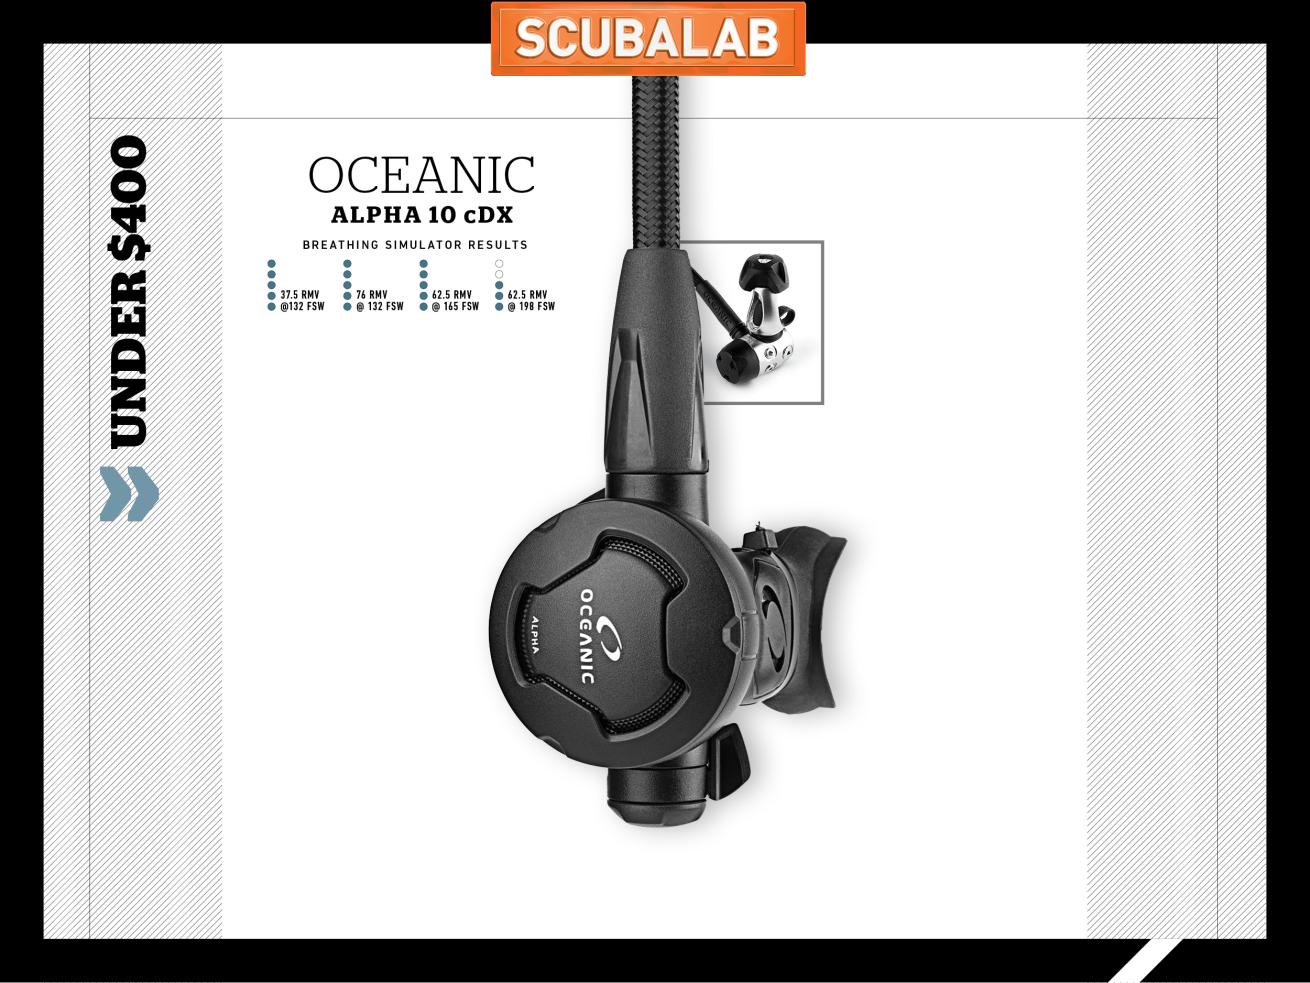 Oceanic Alpha 10 cDX scuba diving regulator ScubaLab gear review